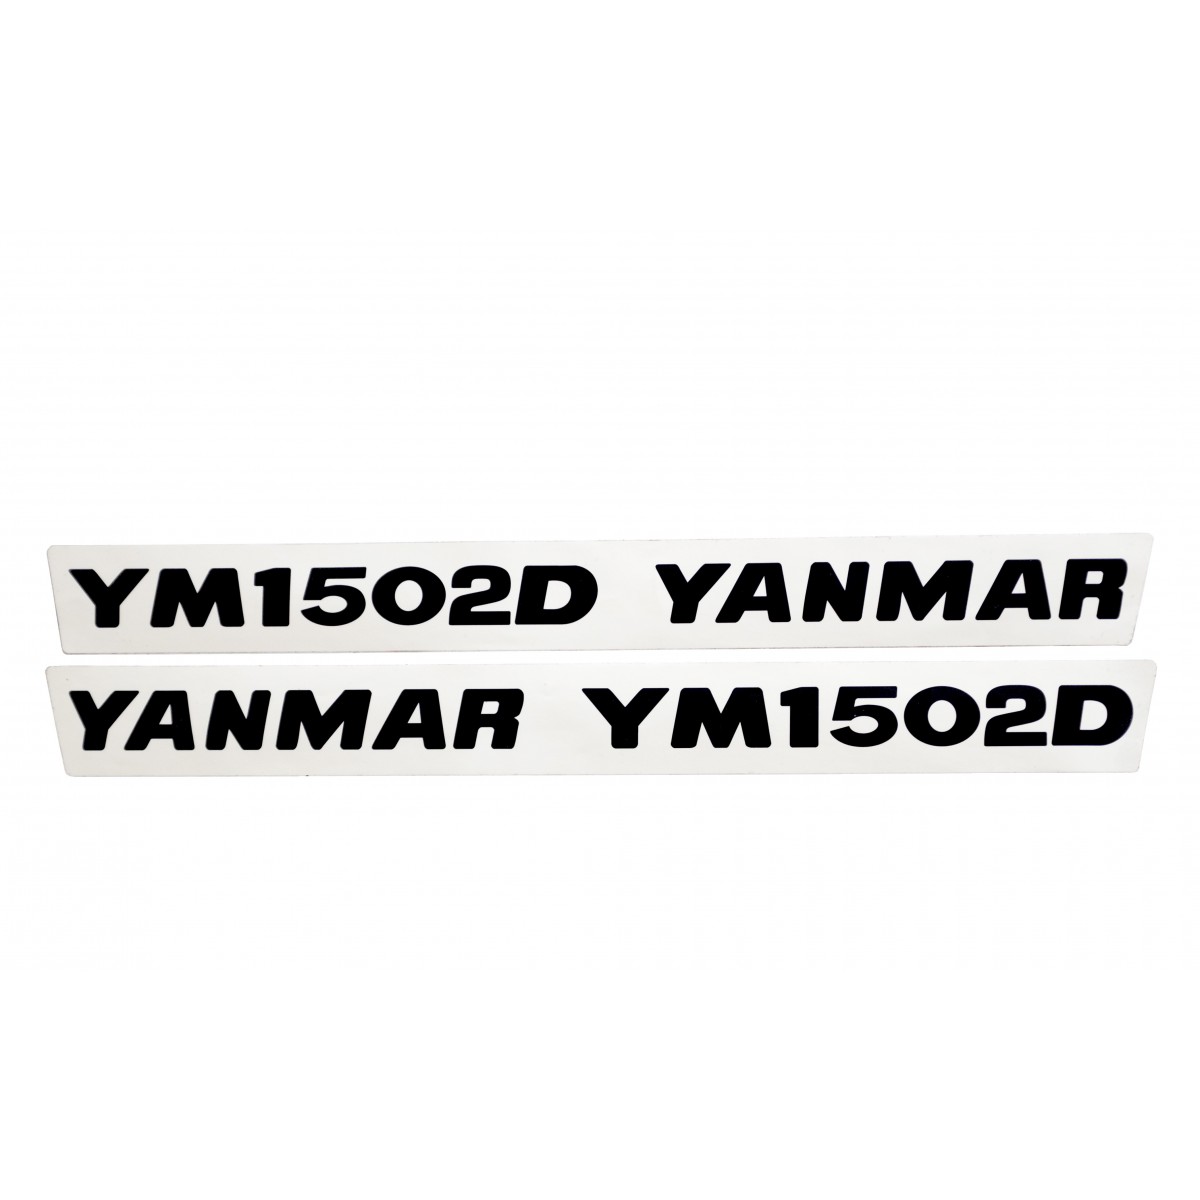 Naklejki Yanmar YM1502D